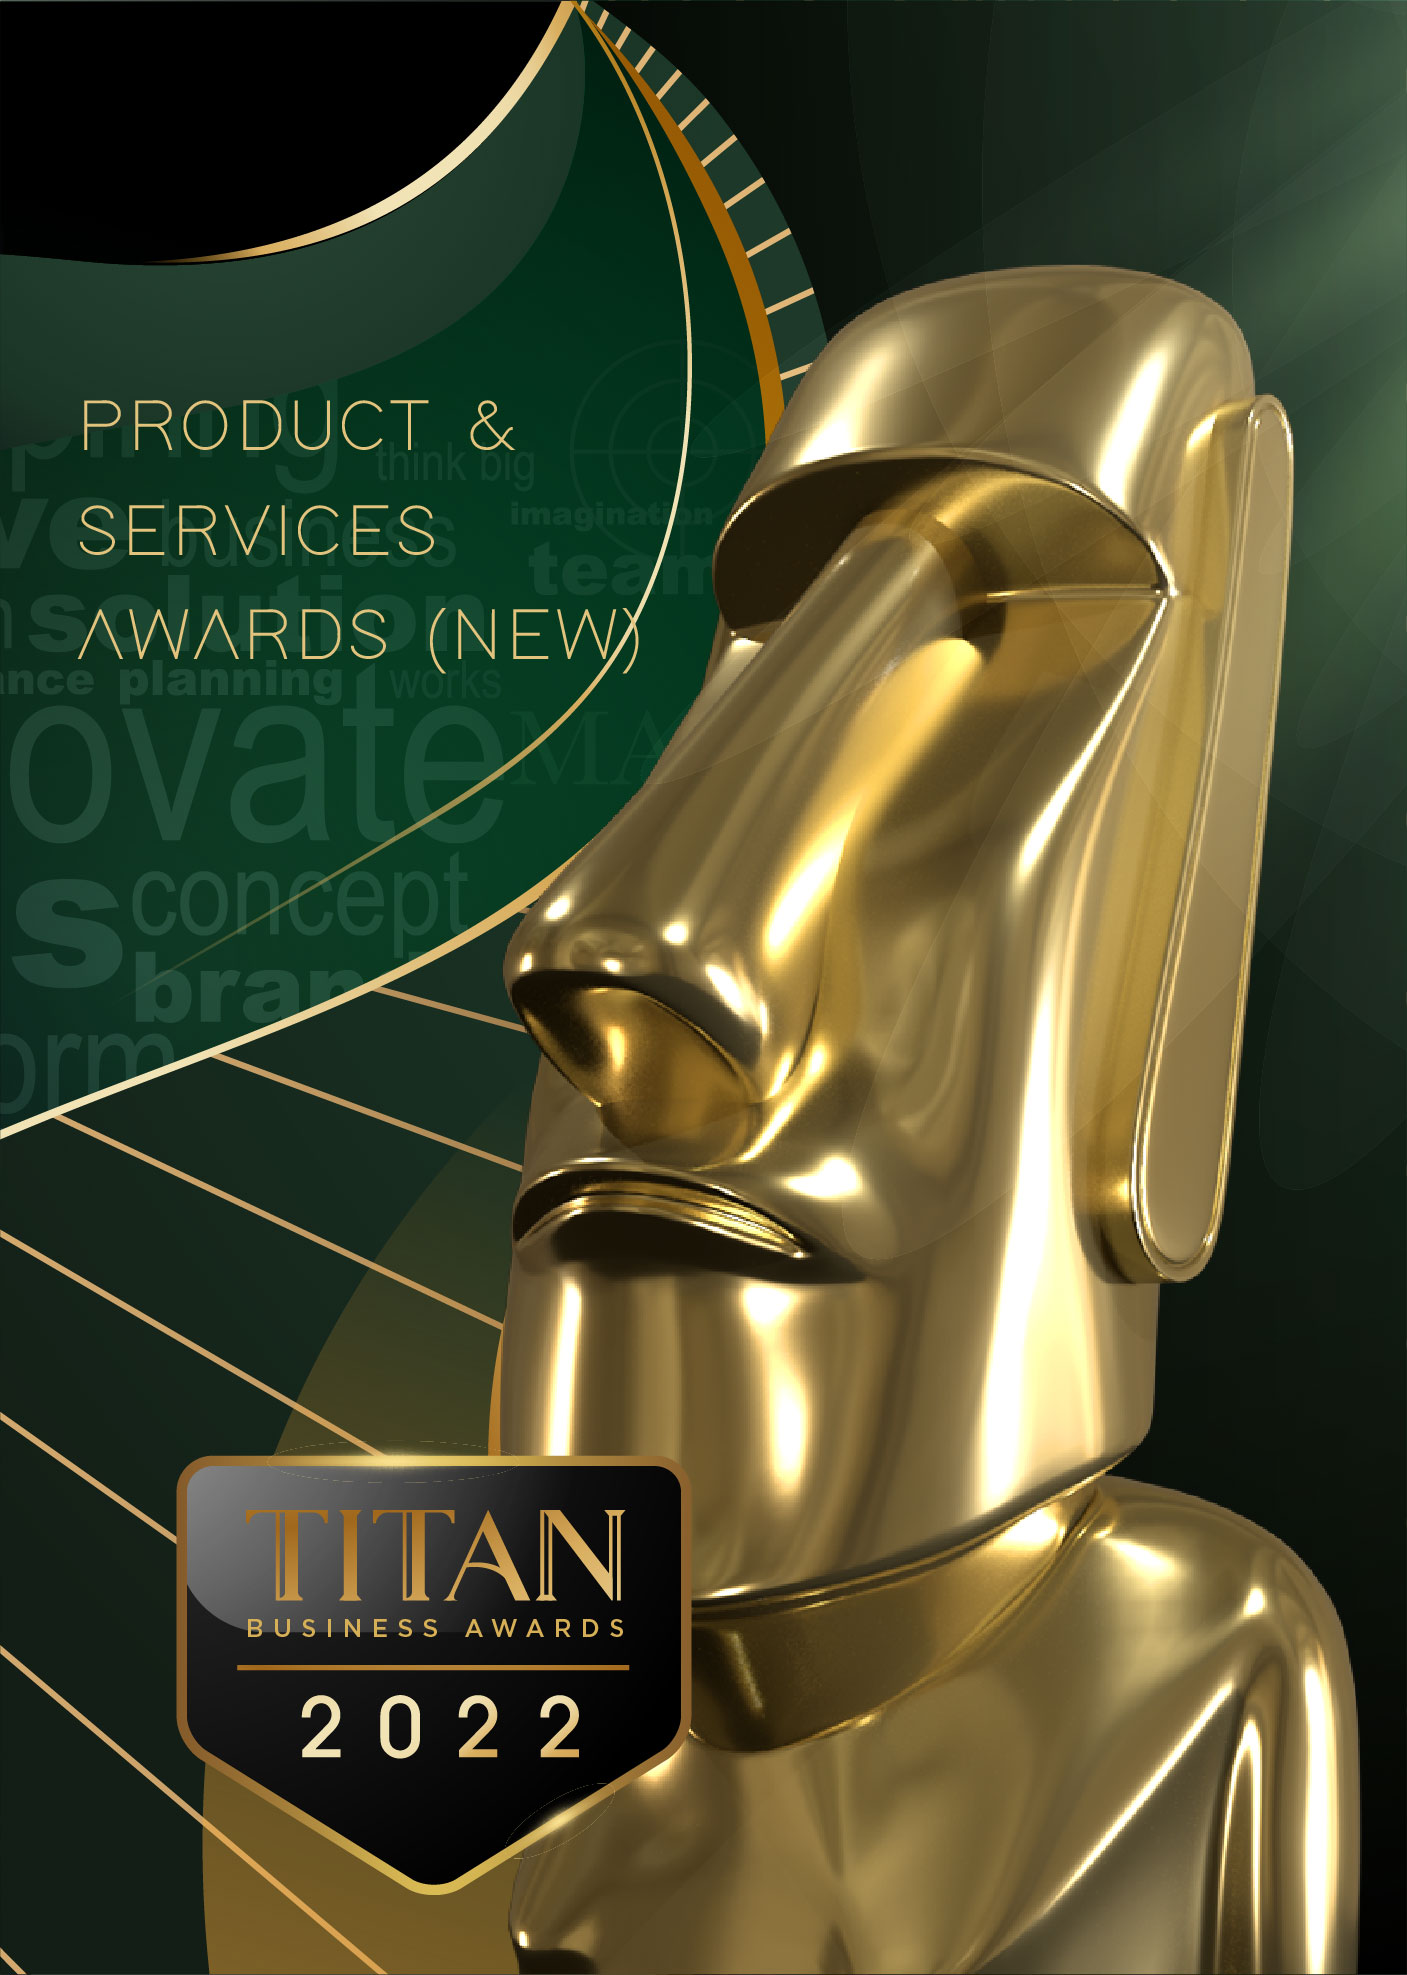 TITAN Product & Services Awards 2022 | TITAN Awards